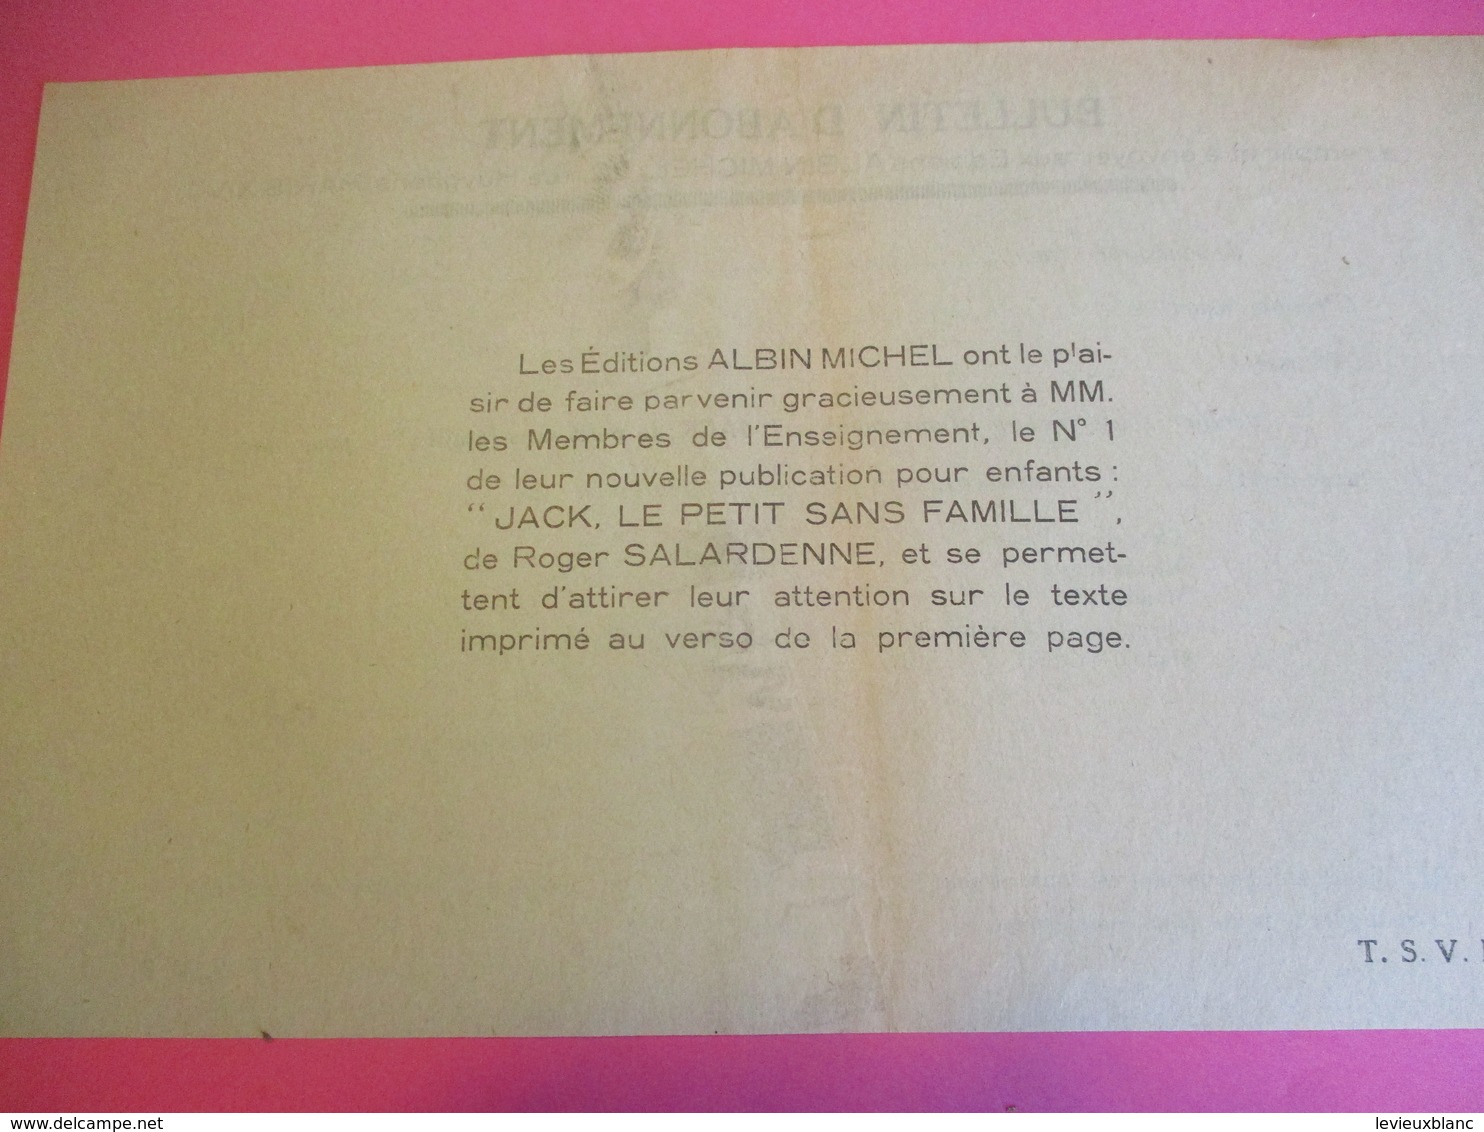 Hebdo jeunesse/Jack le petit sans famille/Roger SALARDENNE/N°1/Albin Michel/Bellenand/Fontenay aux roses/1938 BD120